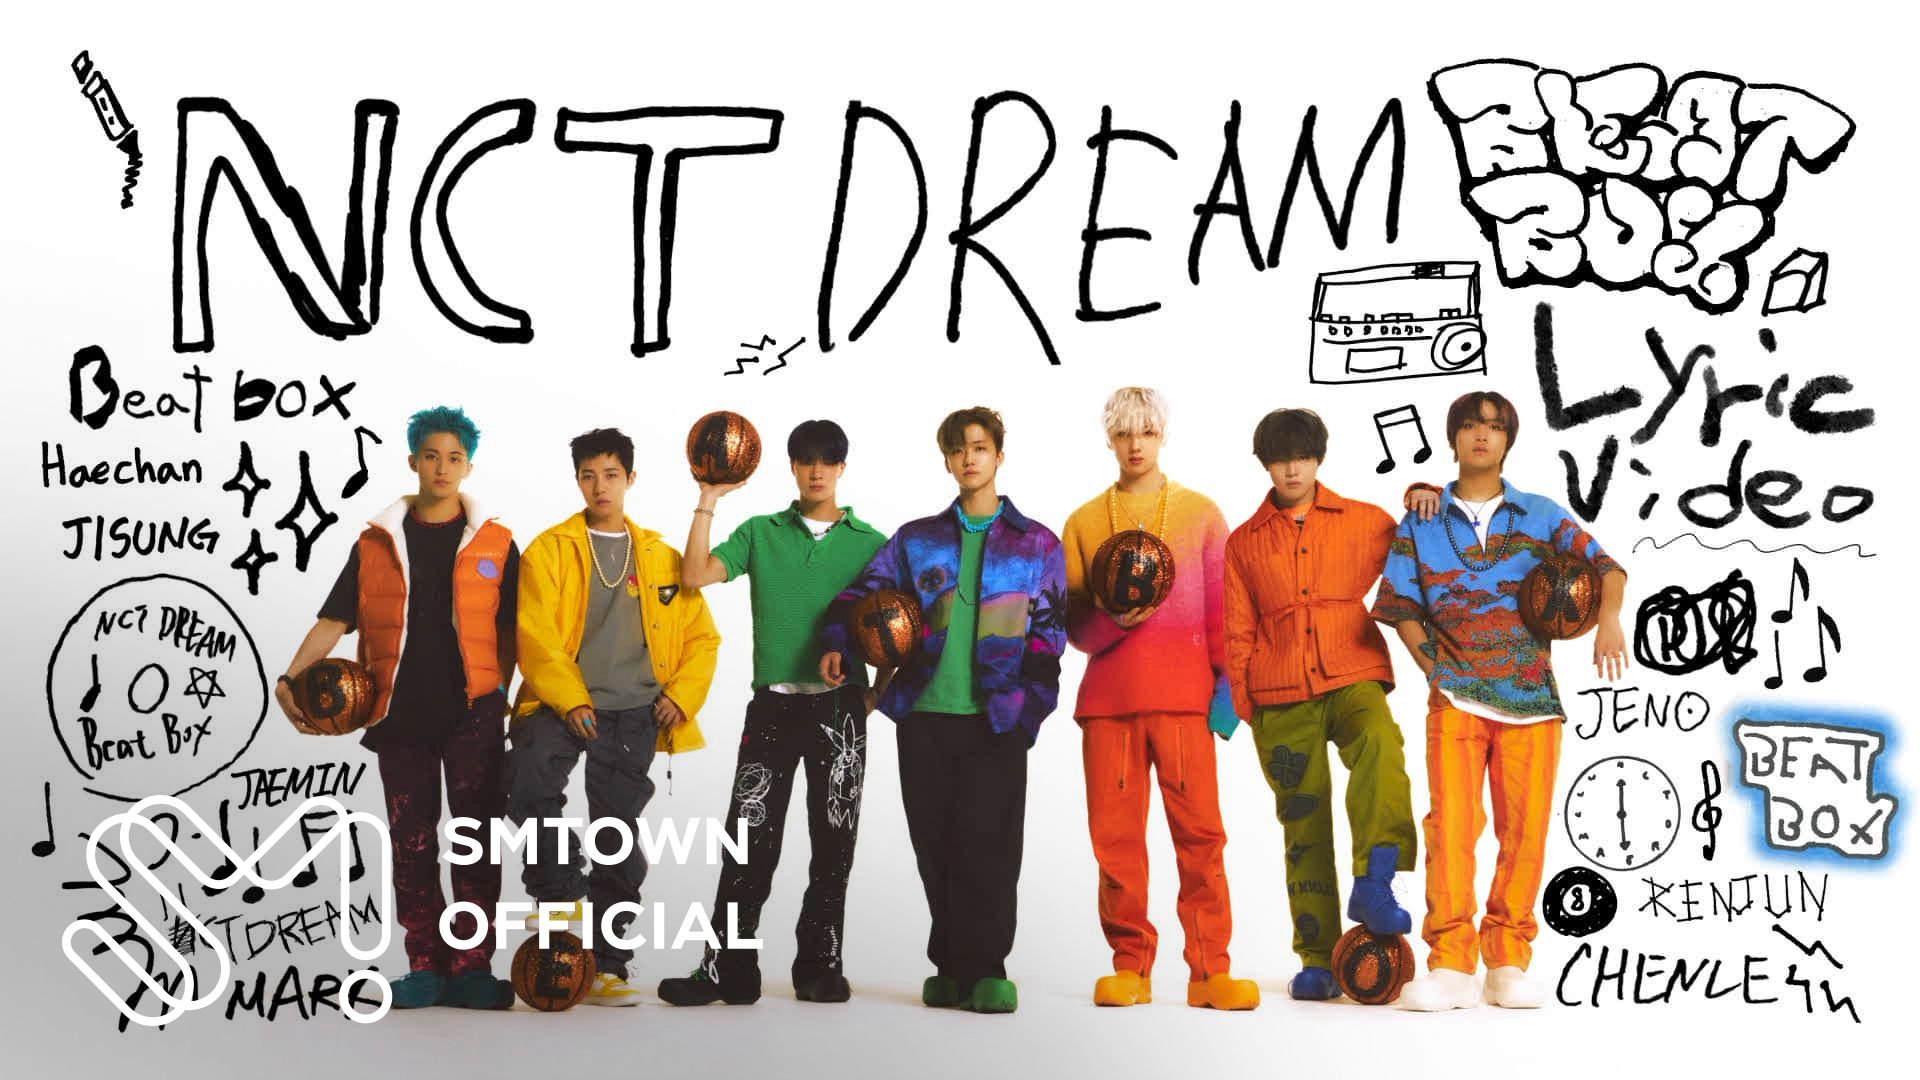 Lirik Lagu 'Beatbox' - NCT DREAM English Version Terjemahan Bahasa Indonesia, Baru Riilis Versi Bahasa Inggris